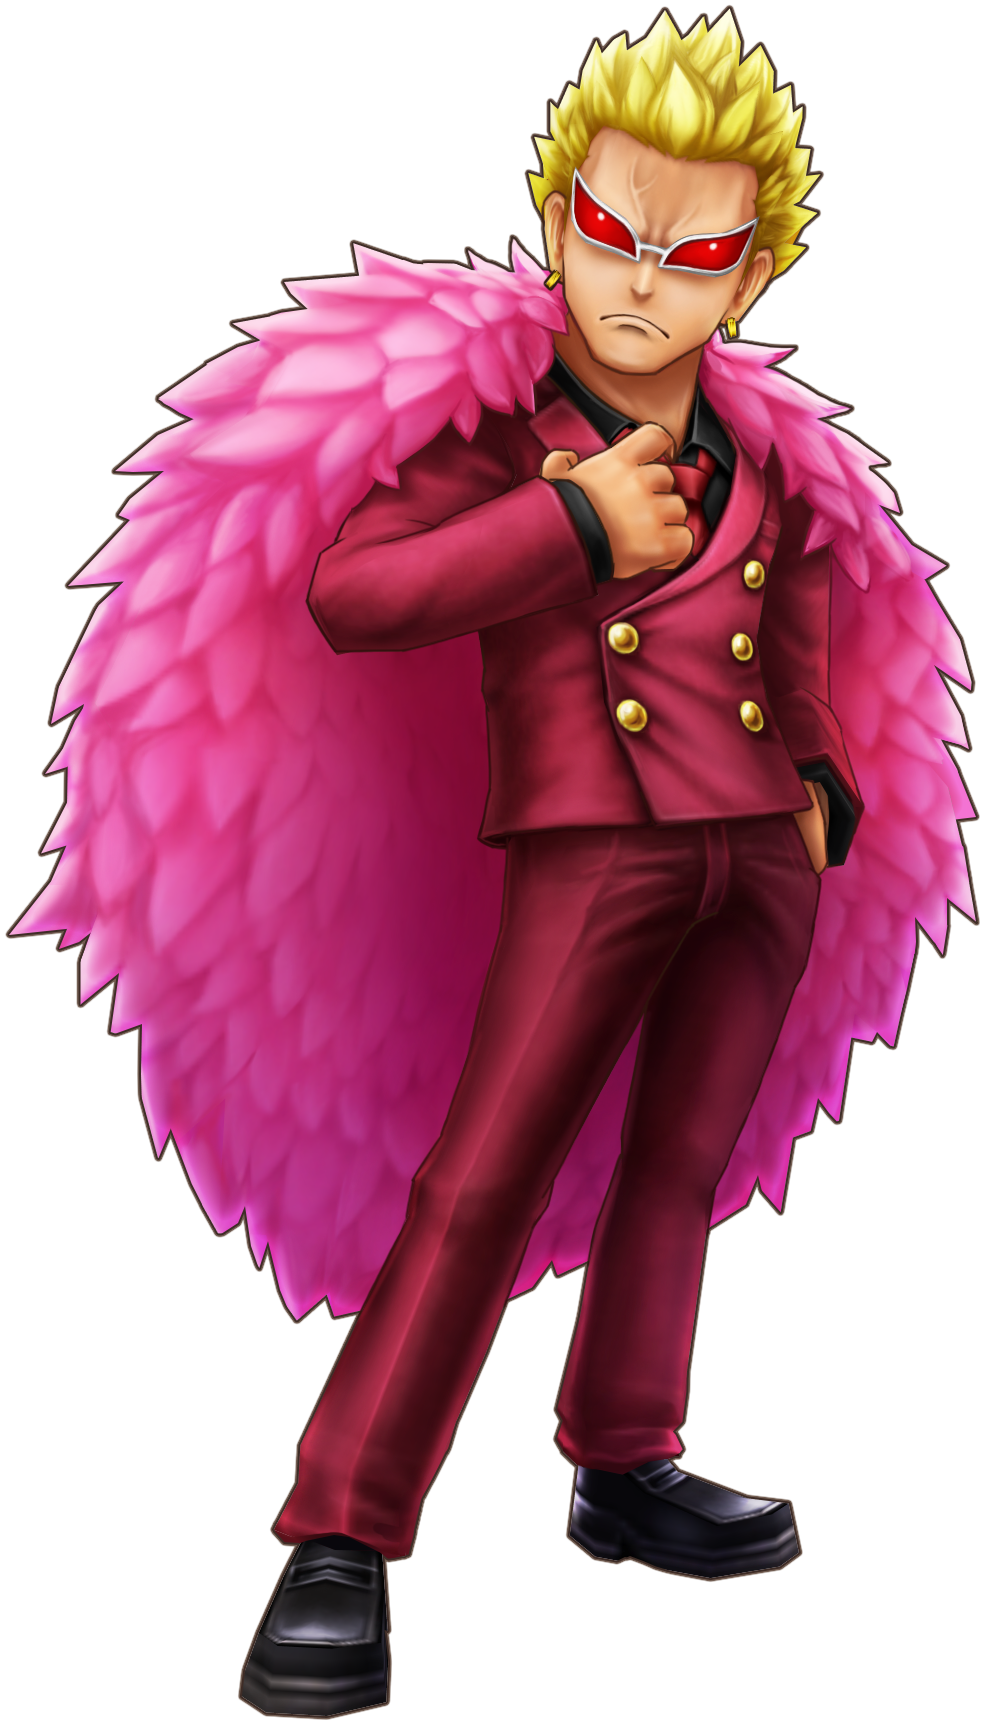 Numancia Flamingo, One Piece Wiki